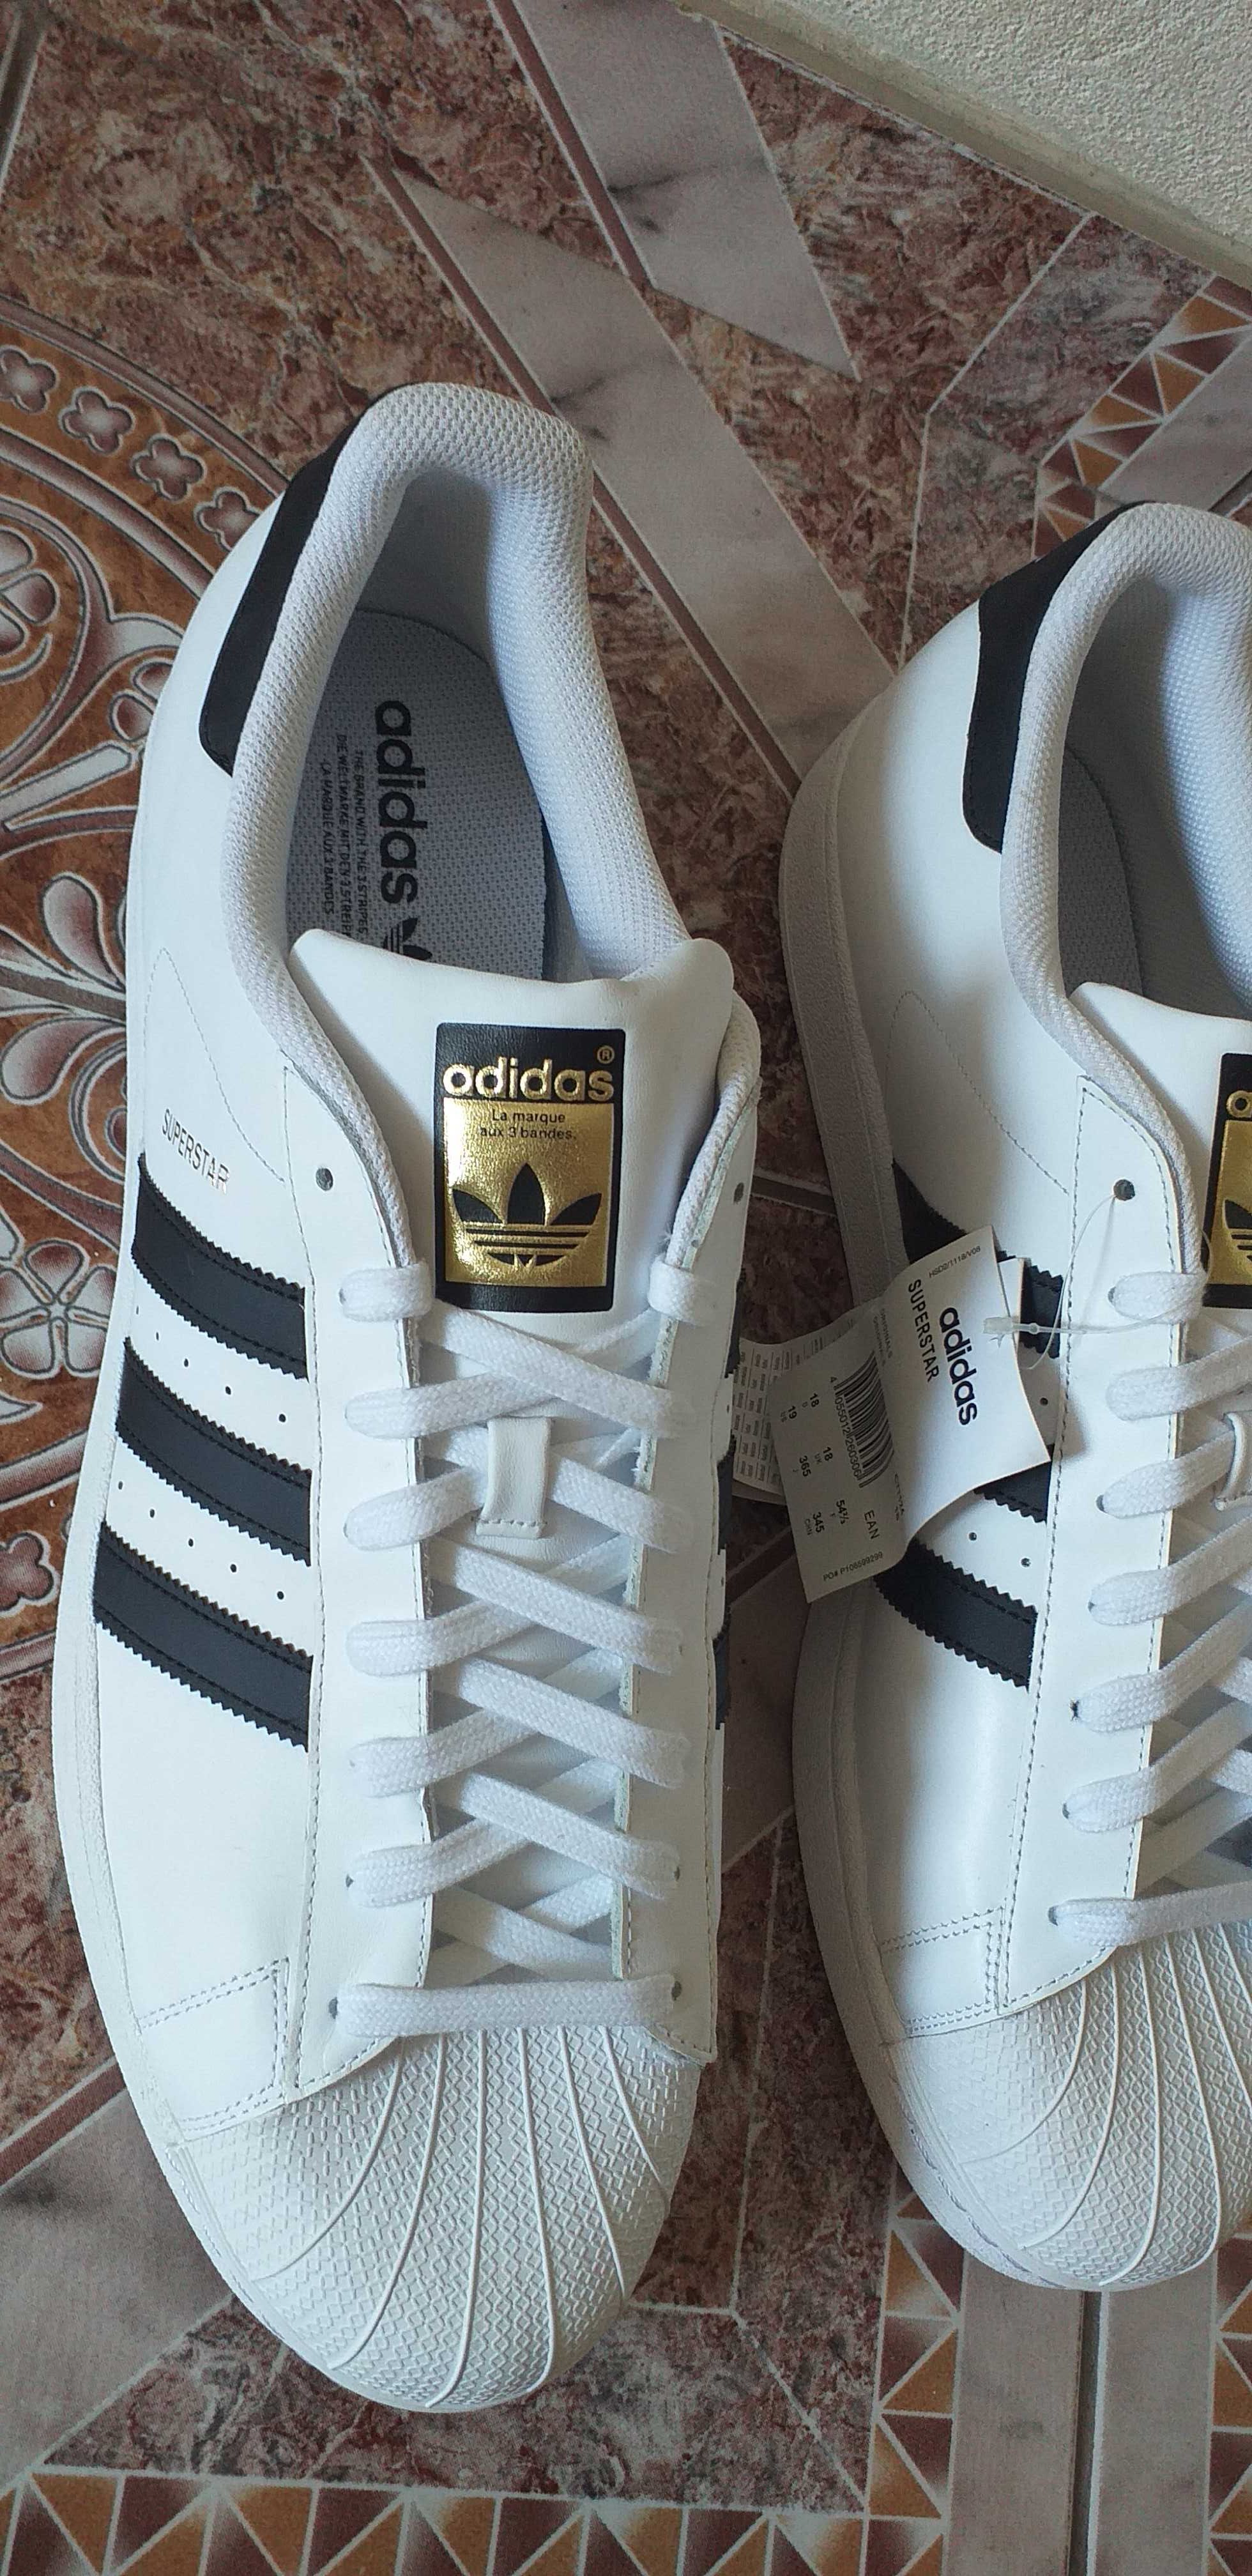 Adidasi Nr. 54 ,ADIDAS,piele naturala,made Indonesia/pantofi sport